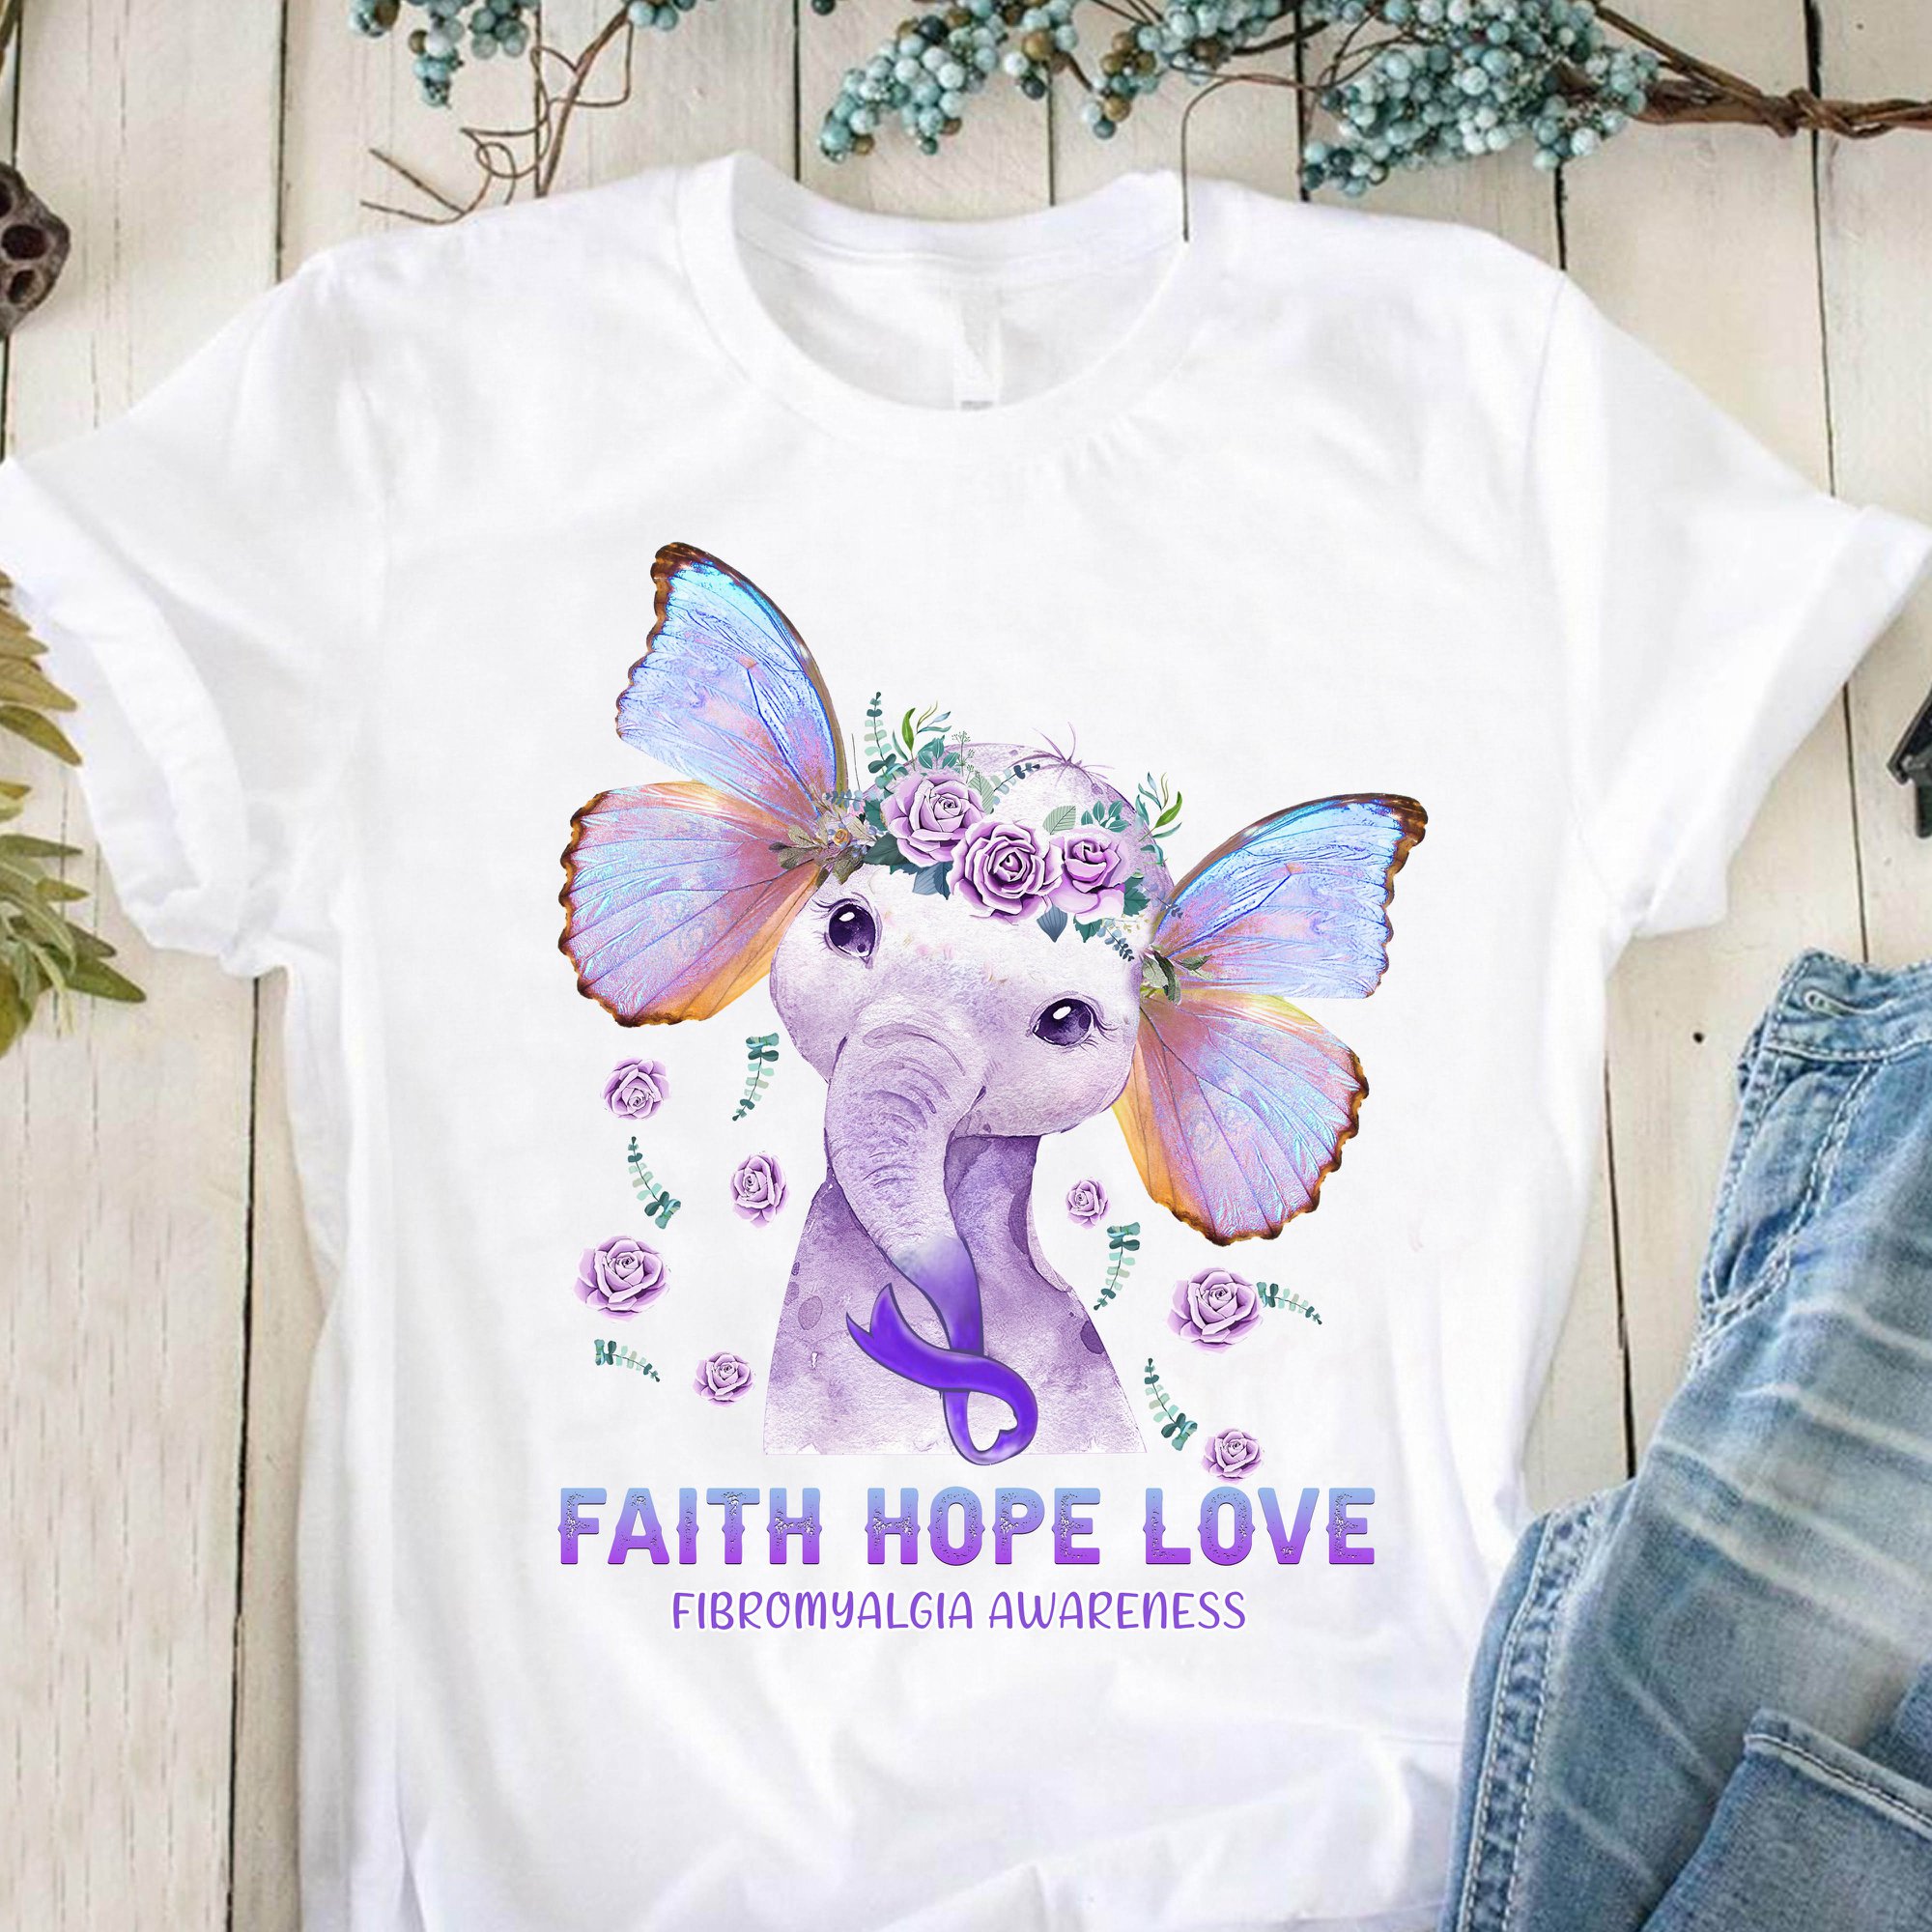 Faith hope love - Fibromyalgia awareness, elephant with butterfly ears